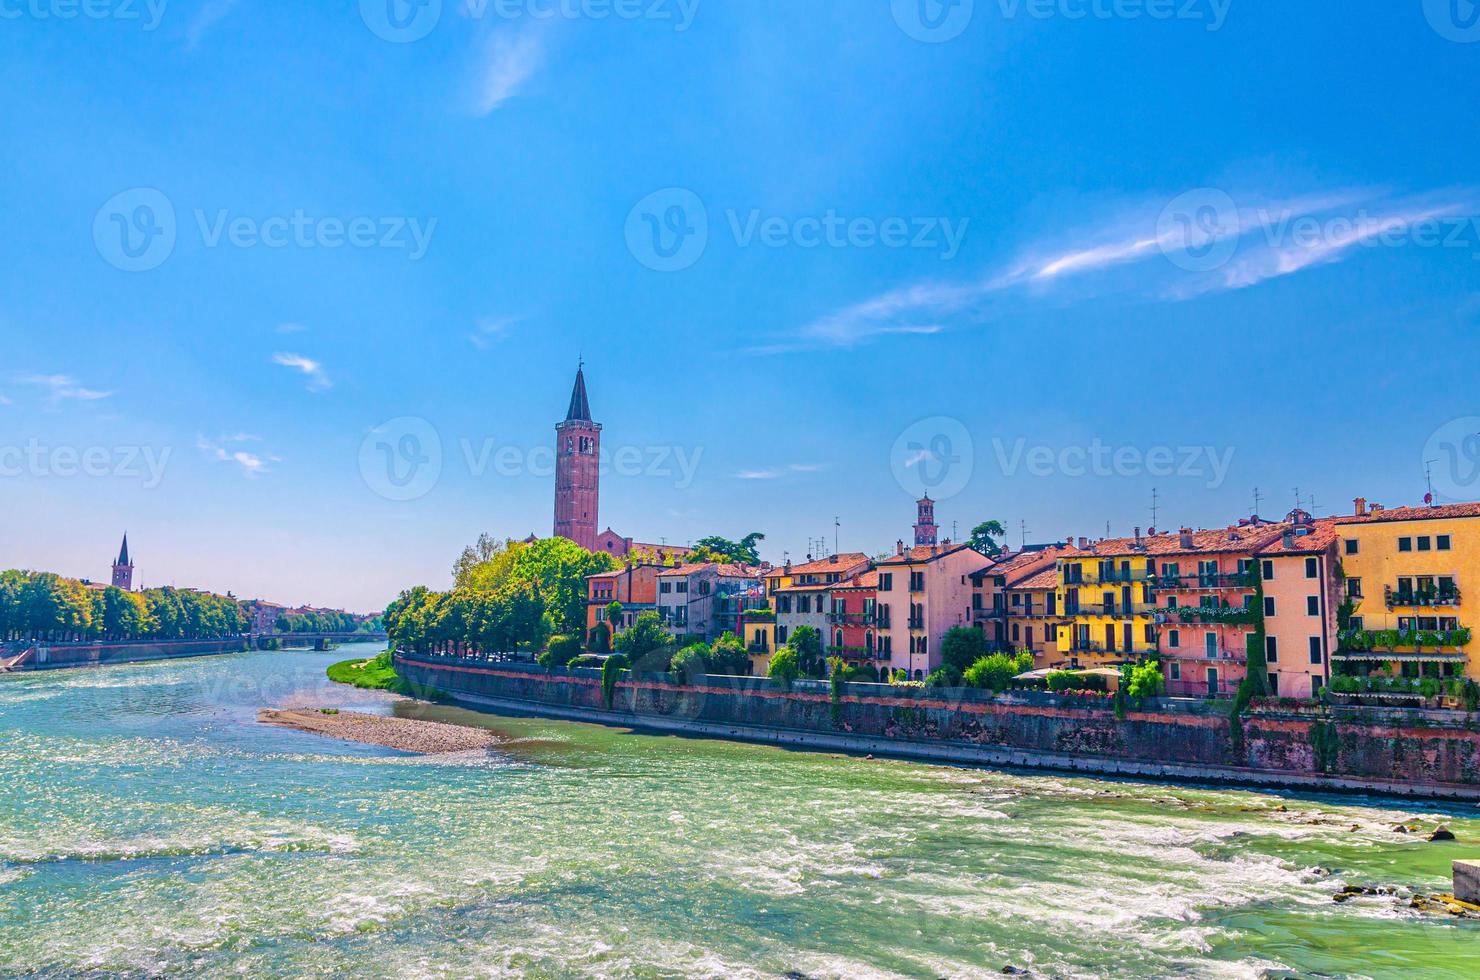 Etsch im historischen Zentrum der Stadt Verona foto